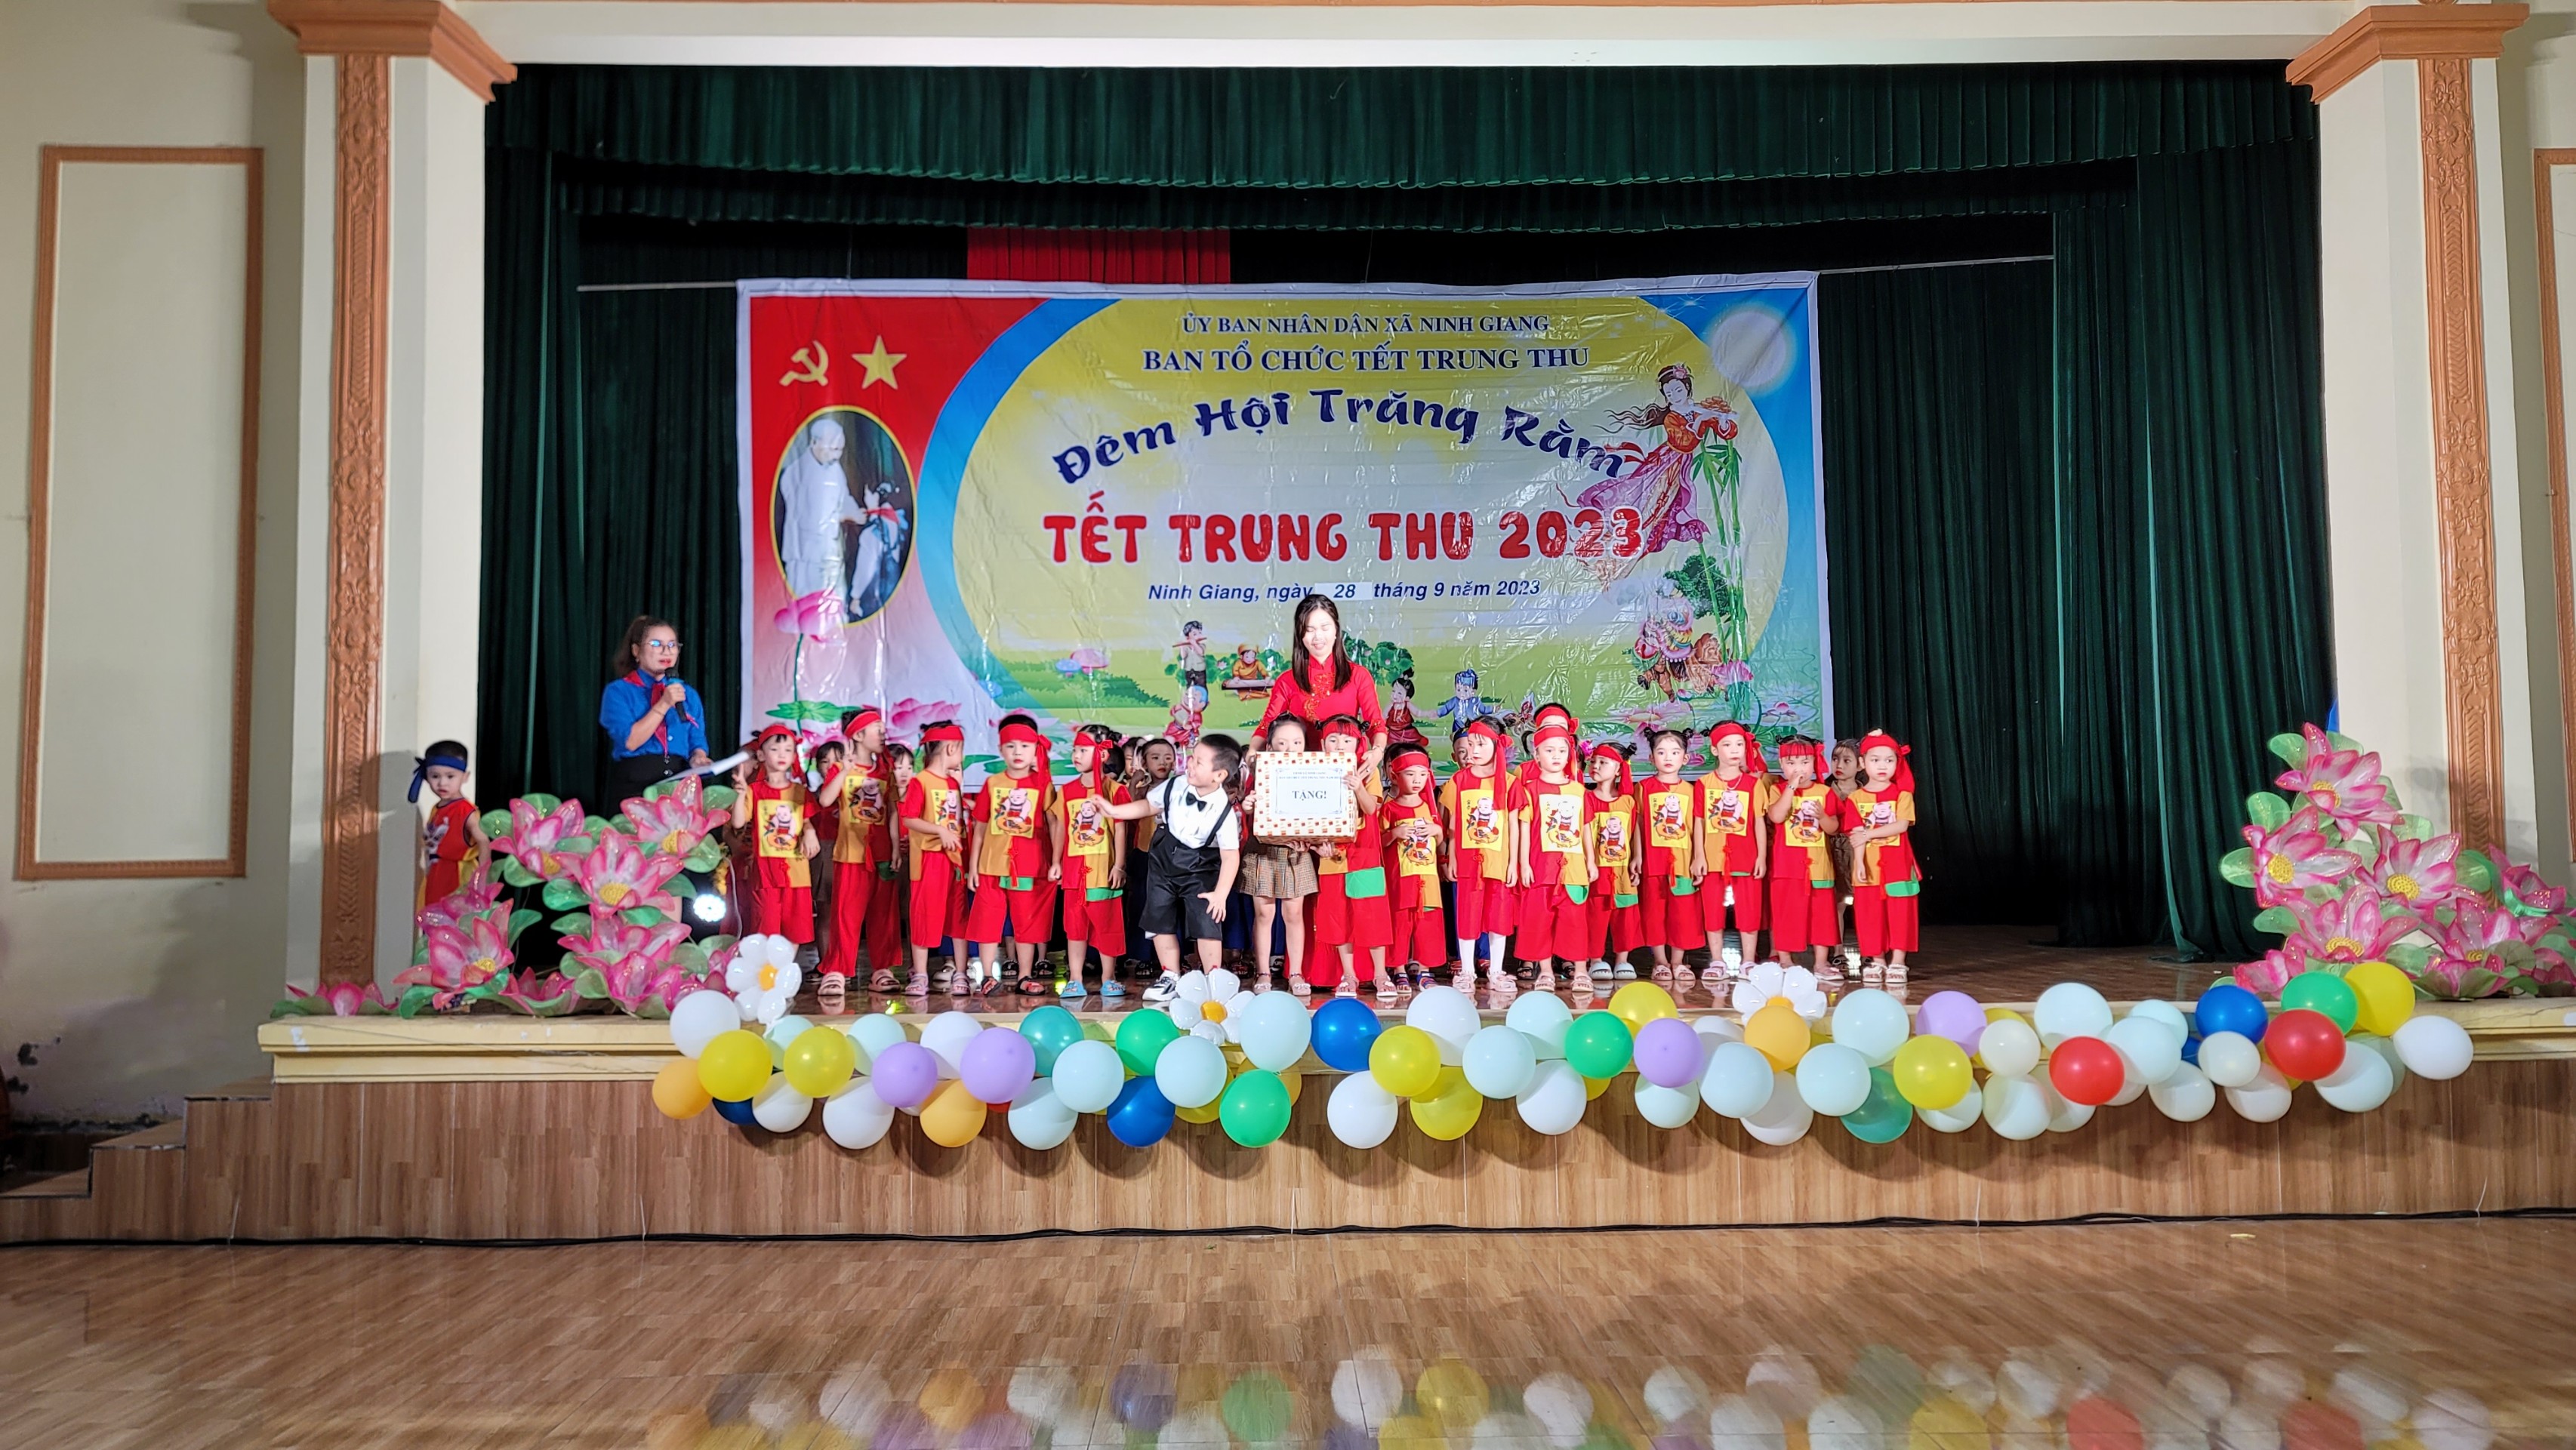 Trang chủ - Ủy ban nhân dân xã Ninh Giang huyện Hoa Lư tỉnh Ninh Bình